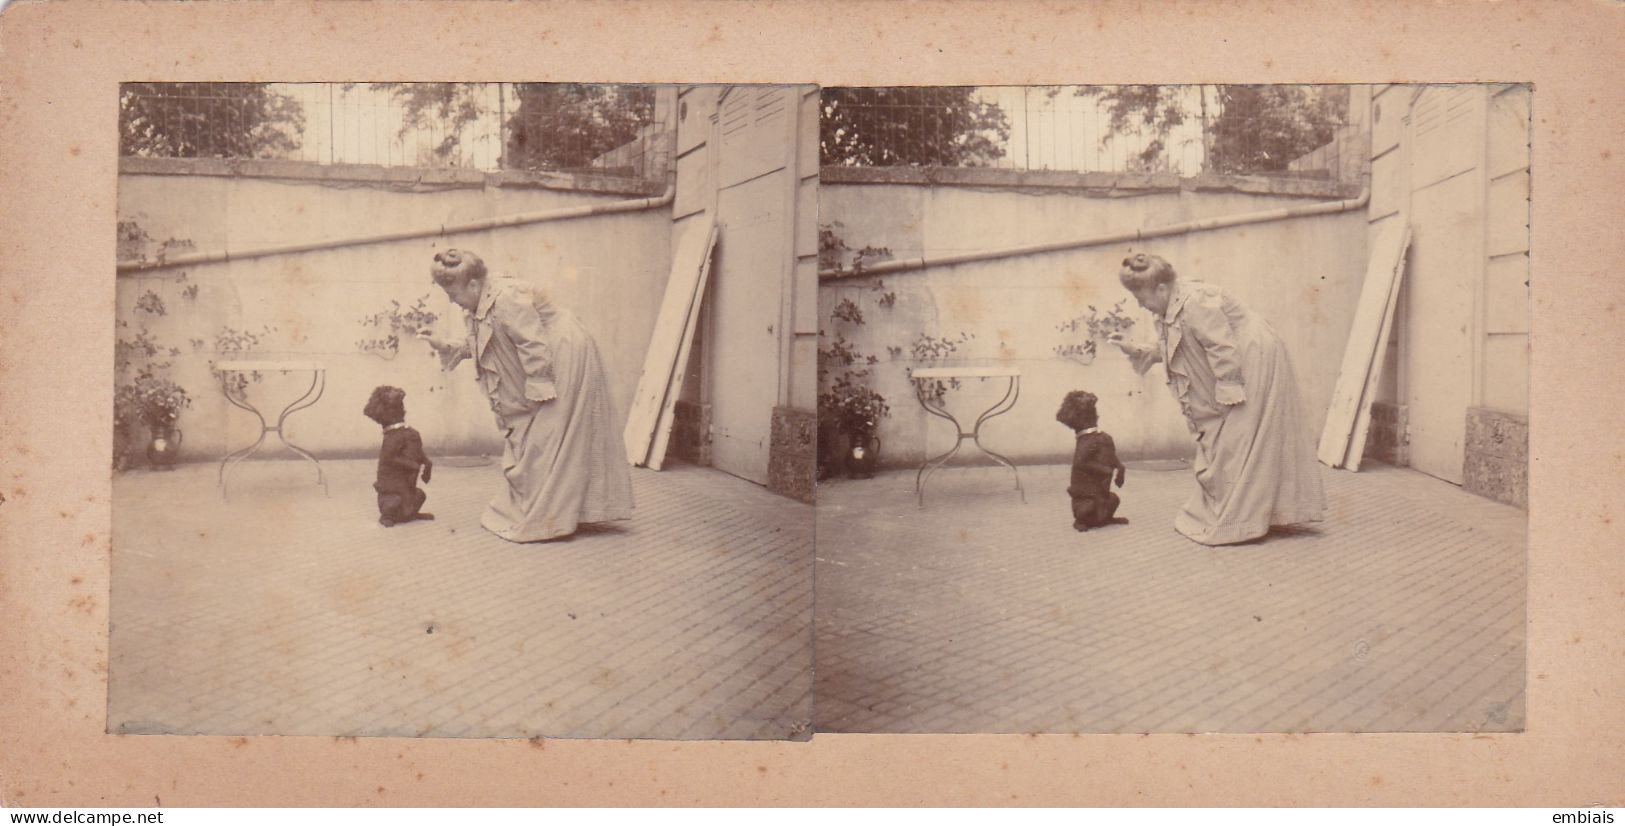 CANICHE DRESSAGE - Photos Stéréoscopiques La Leçon, Caniche Dans L'attente D'une Récompense Vers 1900 - Stereo-Photographie